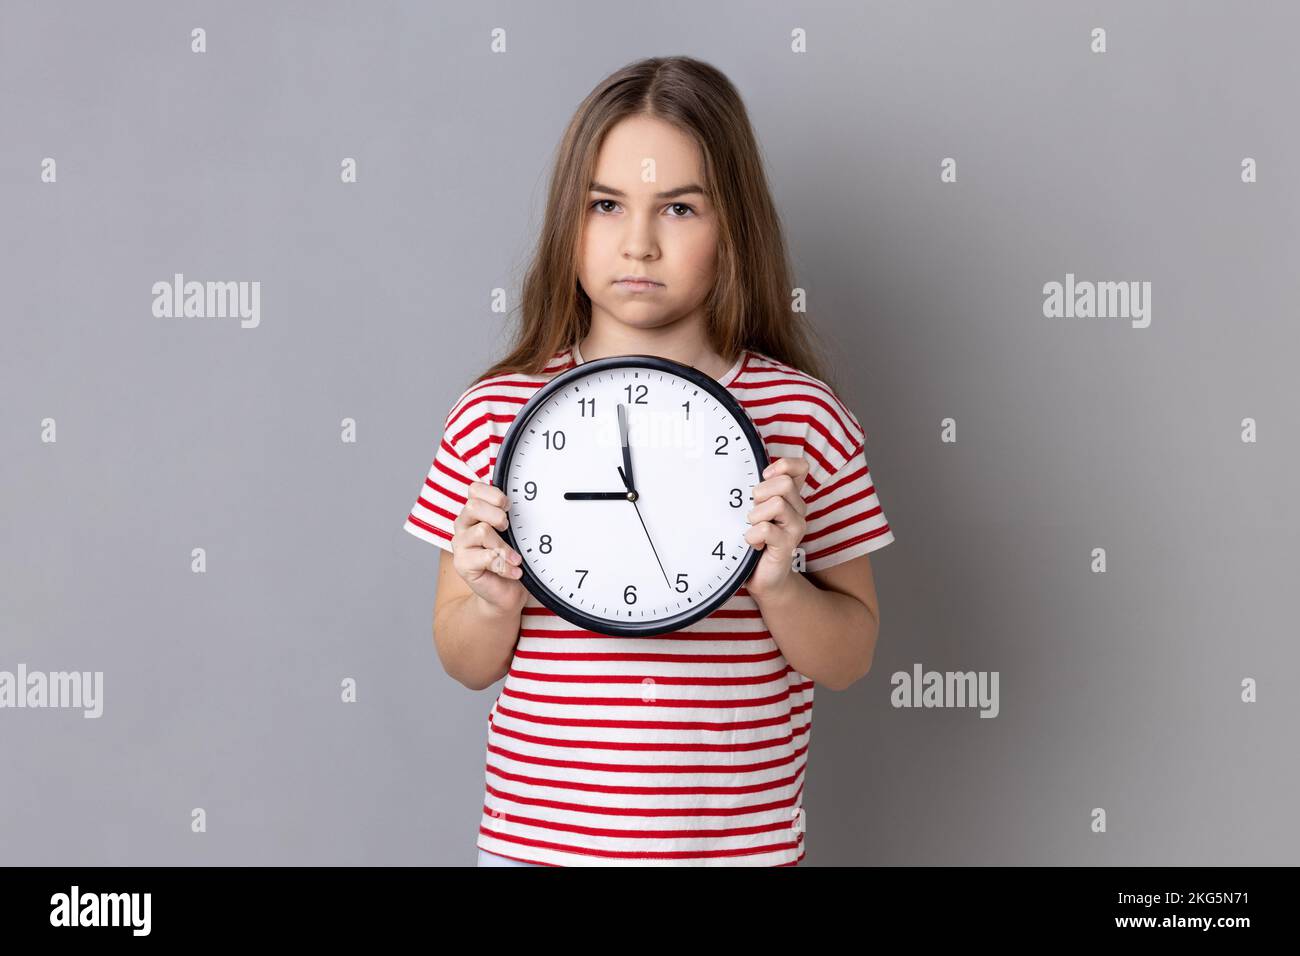 Porträt eines ernsten kleinen Mädchens, das gestreiftes T-Shirt trägt, eine große Wanduhr hält, mit unangenehmen Gefühlen in die Kamera schaut, Zeit zu gehen. Studioaufnahmen im Innenbereich isoliert auf grauem Hintergrund. Stockfoto